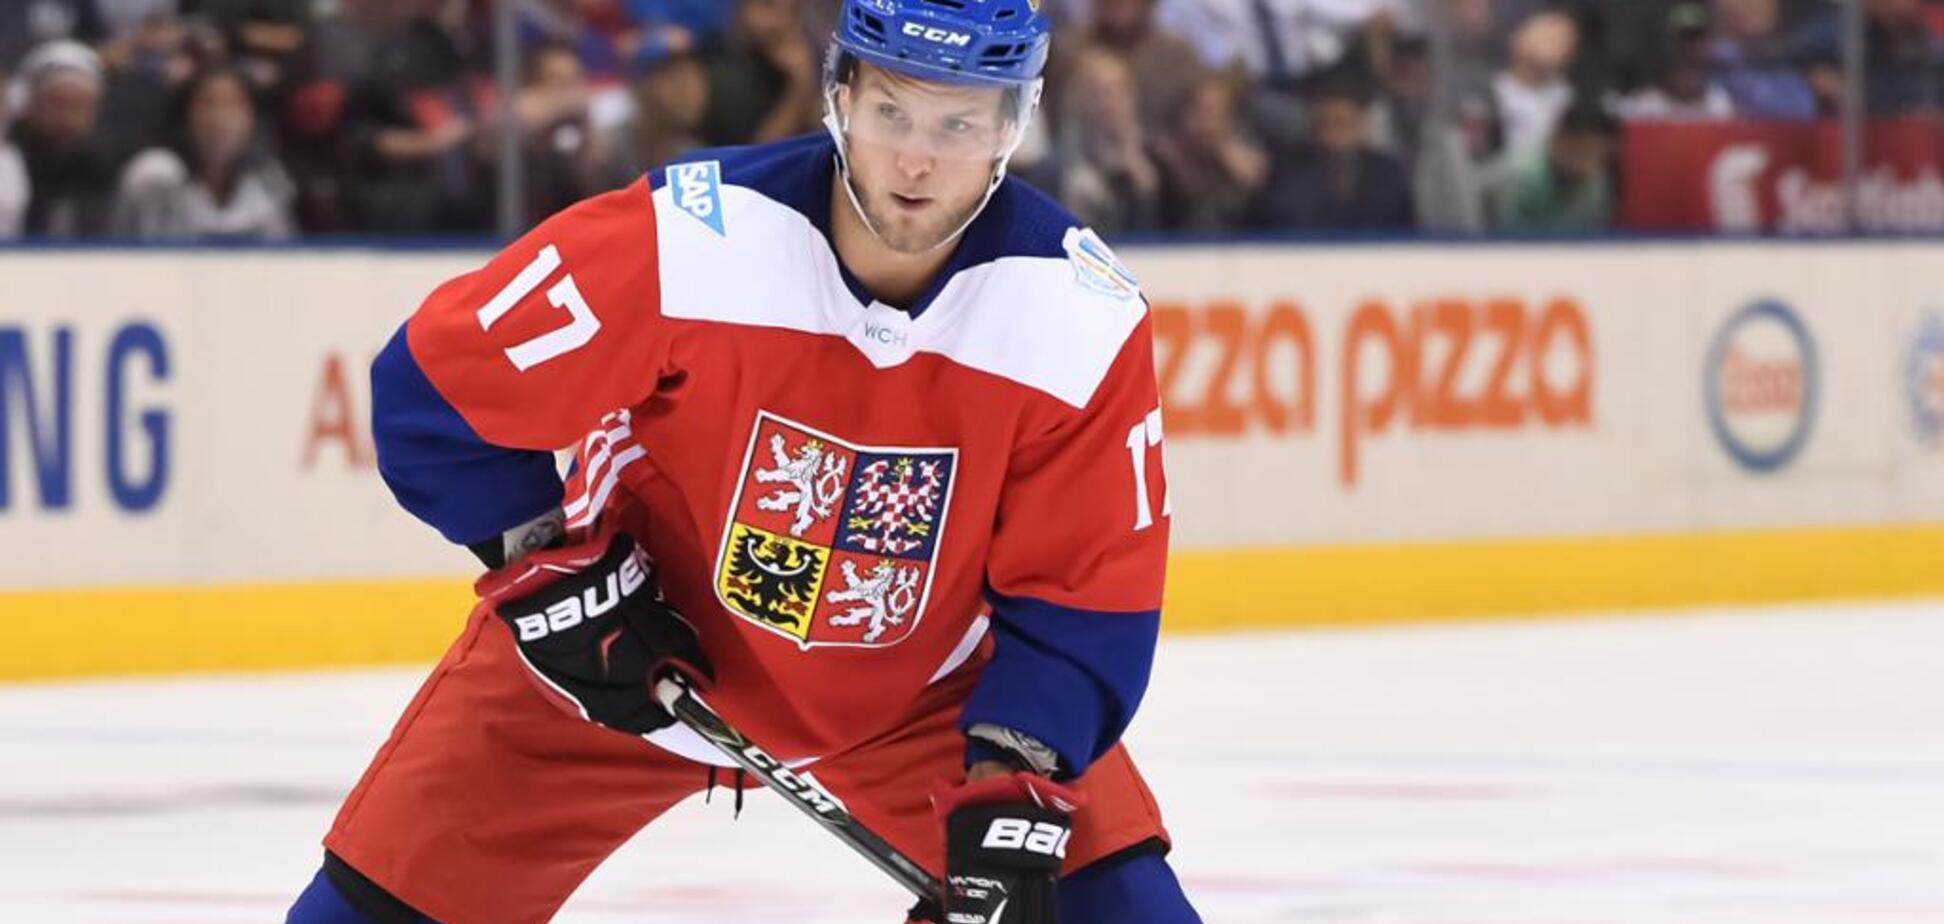 Фейл года: известный чешский хоккеист дико оконфузился в матче НХЛ - видеофакт